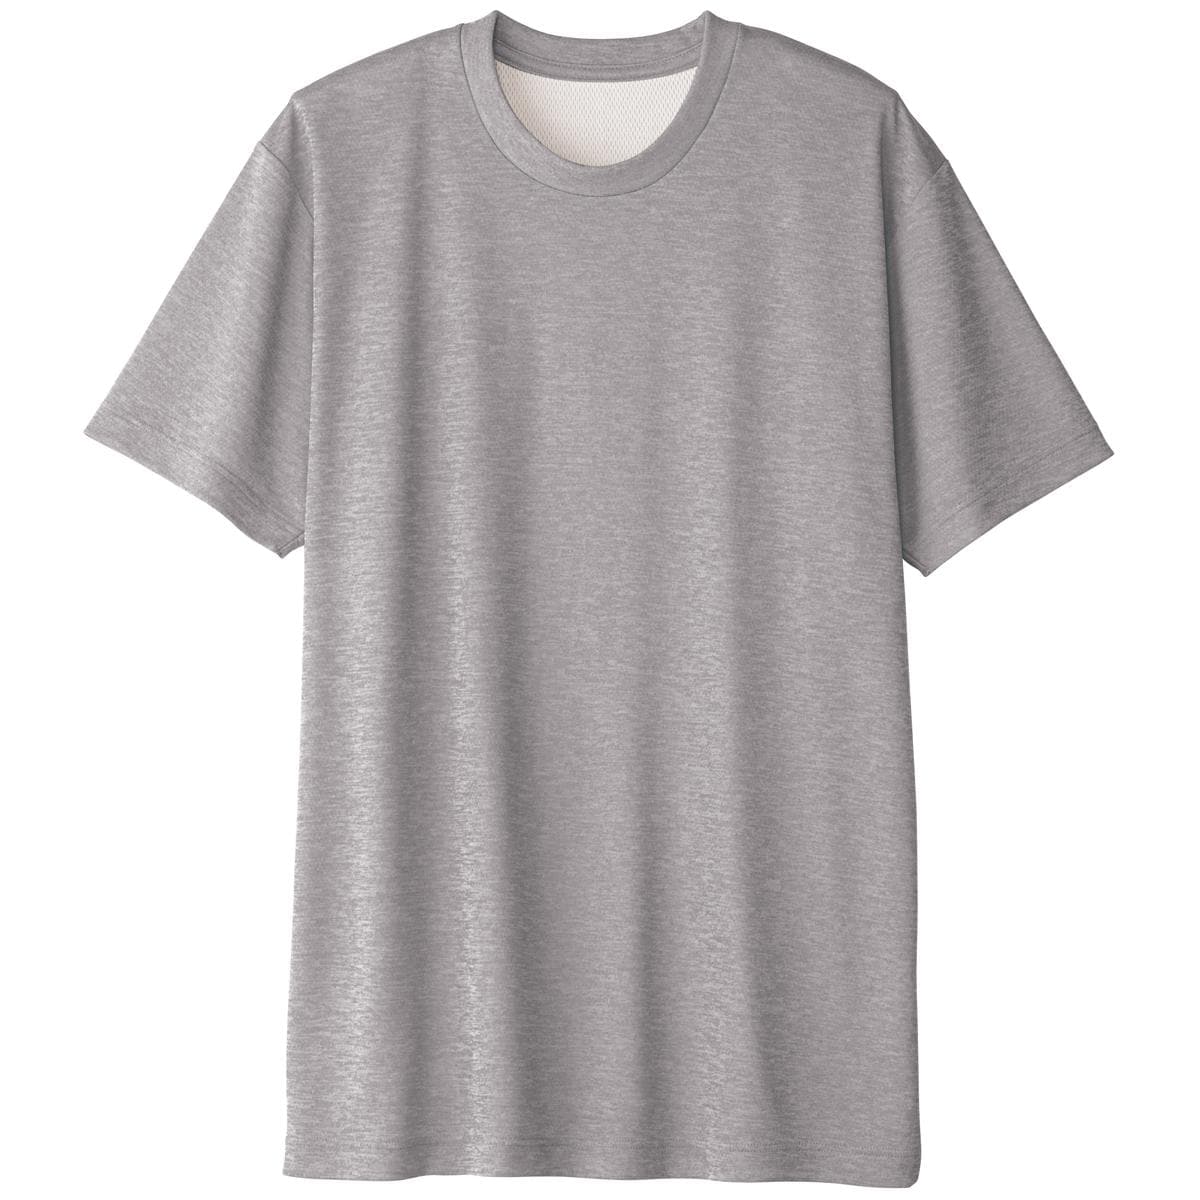 同色2枚組 クルーネックメッシュTシャツ/ドライ(半袖) ファッション通販ならセシール(cecile)